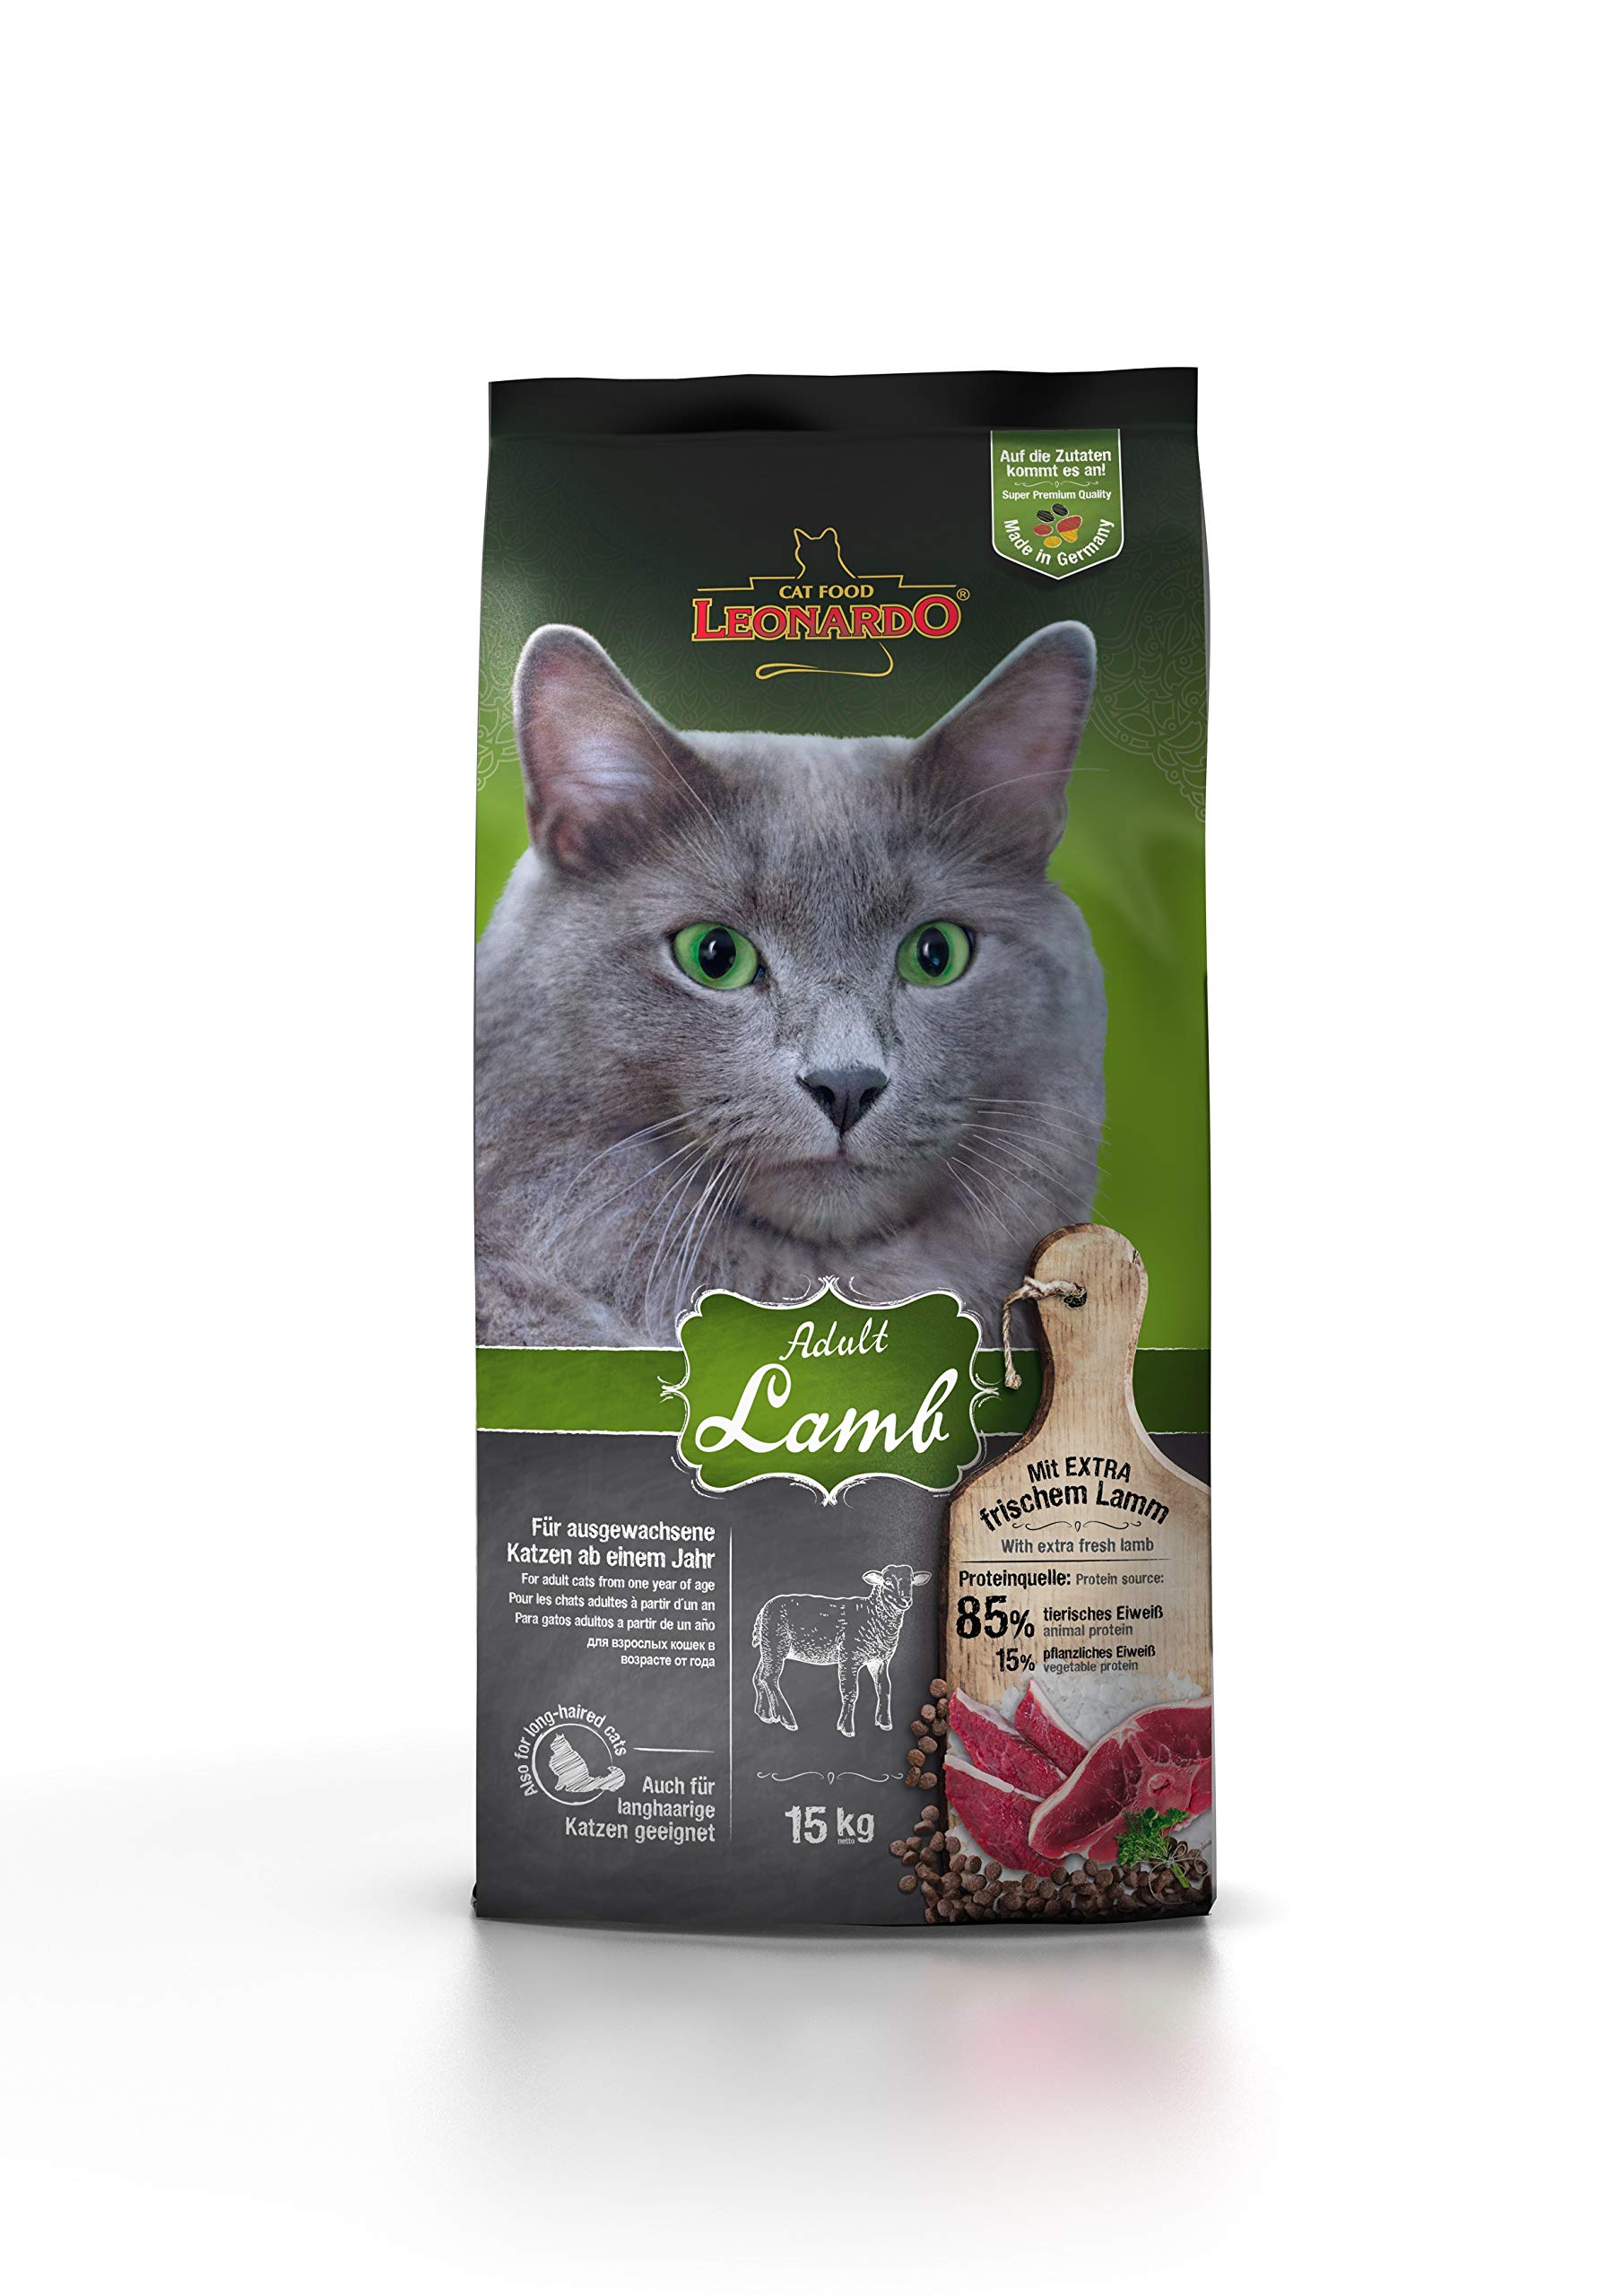 Leonardo Adult Lamb [15kg] Katzenfutter | Trockenfutter für Katzen | Alleinfuttermittel für ausgewachsene Katzen Aller Rassen ab 1 Jahr